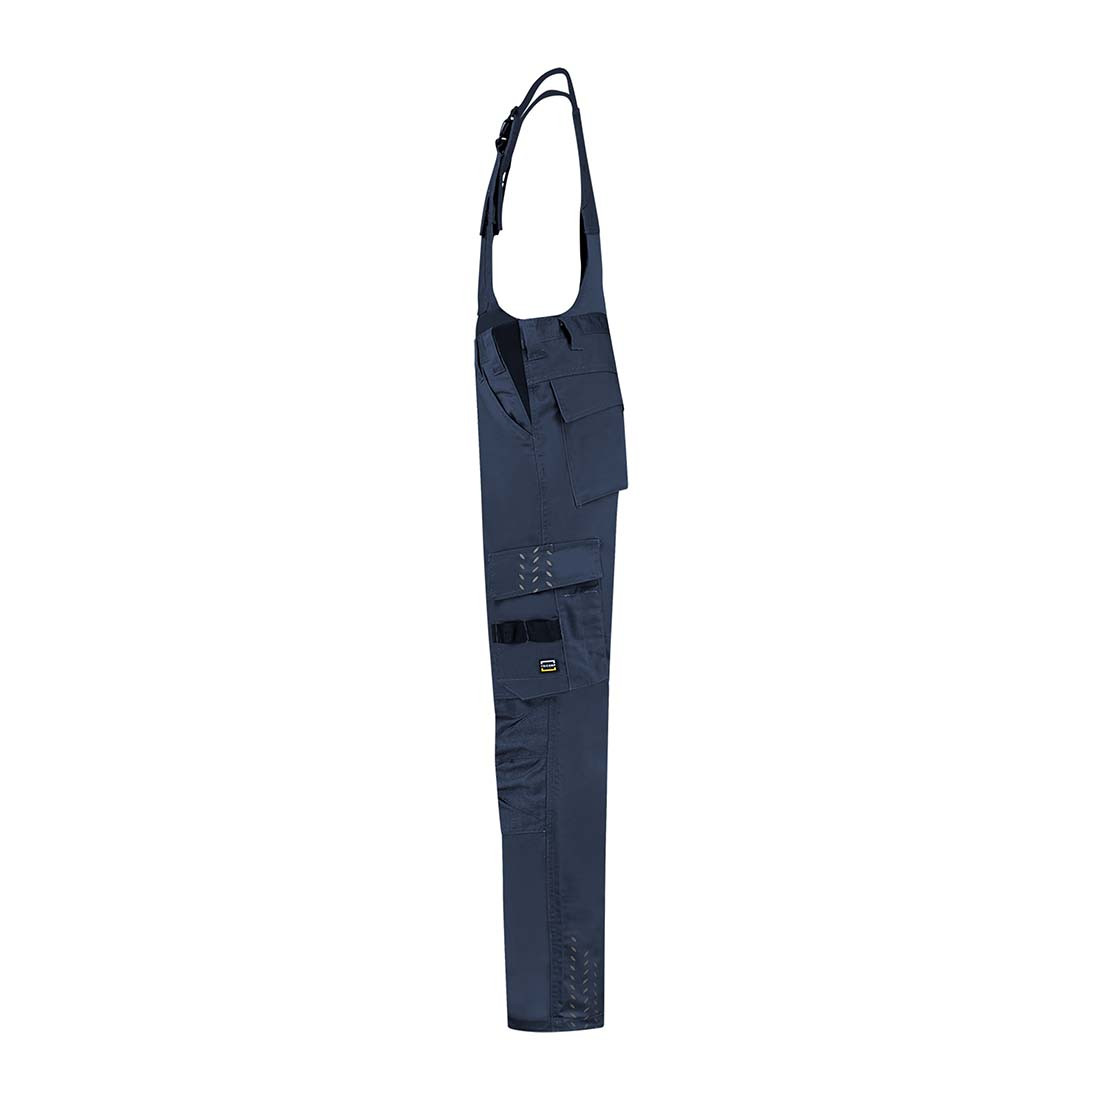 Pantaloni da lavoro con bretelle unisex CORDURA - Abbigliamento di protezione